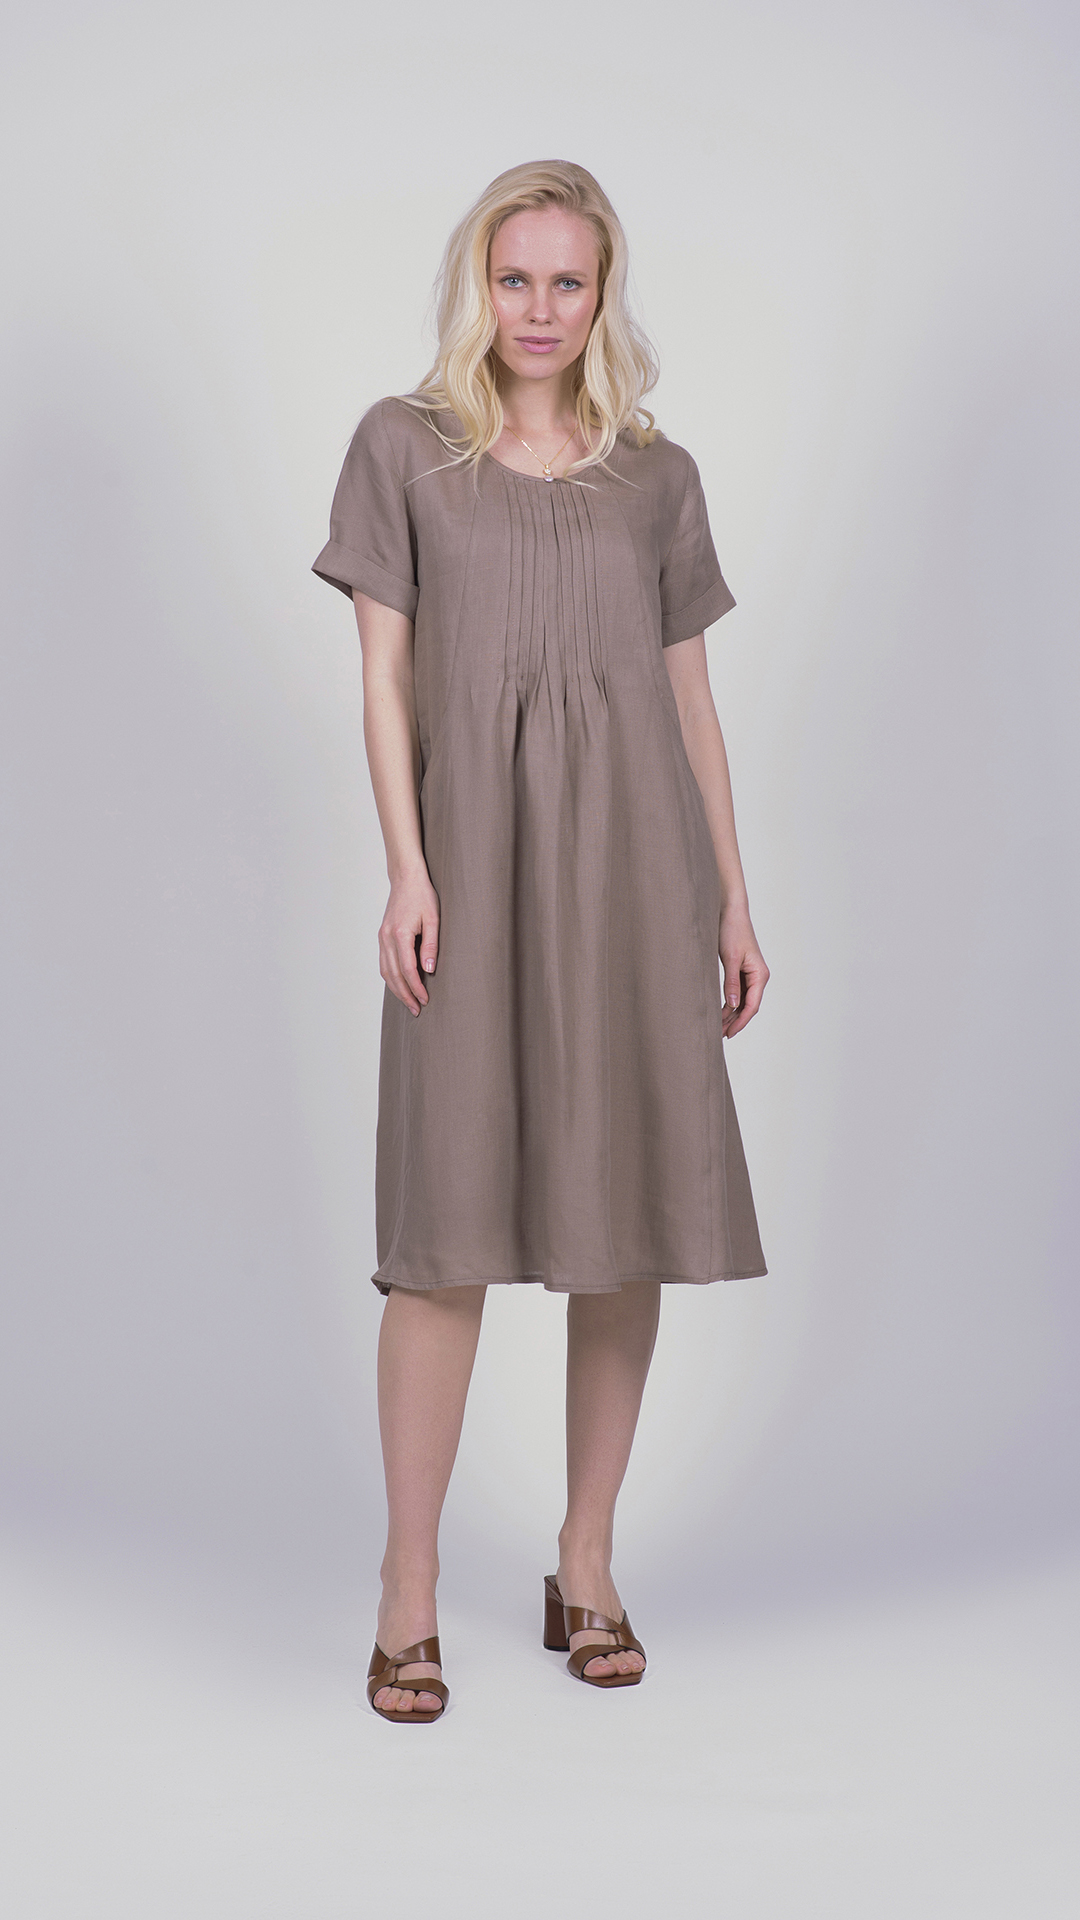 Linodress07 tortora 1 1stAmerican vestito da donna manica corta con lavorazione frontale 100% lino Made in Italy - abito con tasche laterali - puro lino